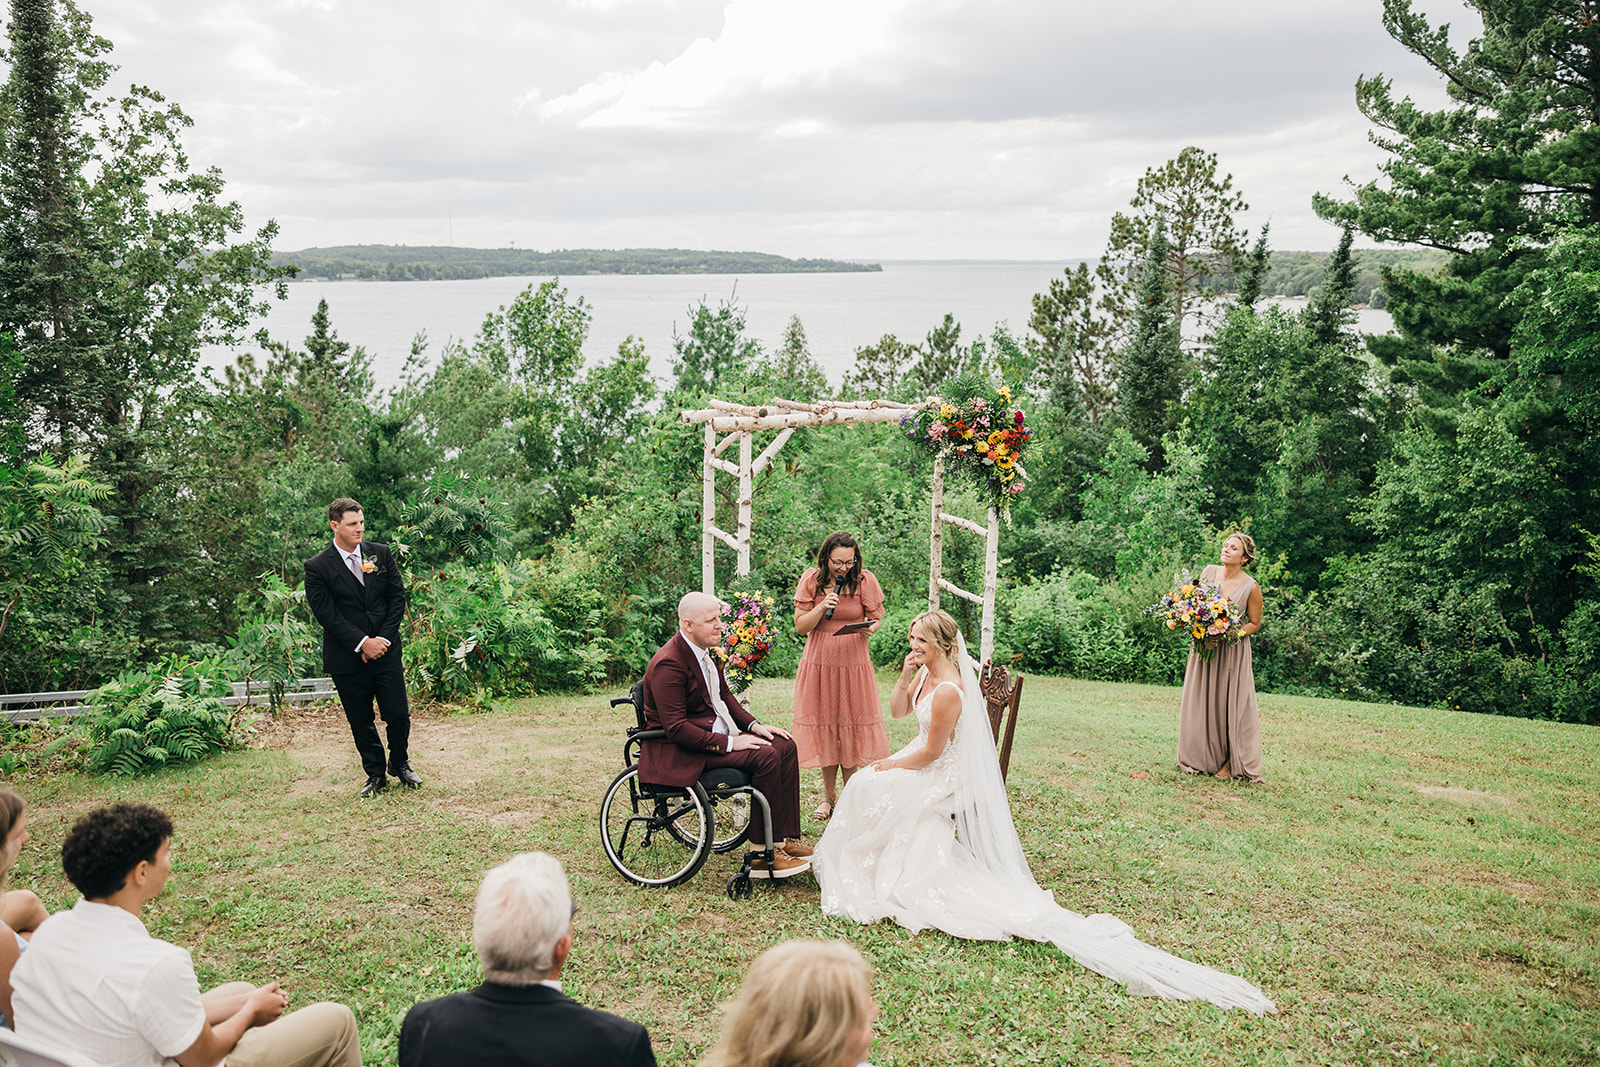 Outdoor wedding on leech Lake in northern Minnesota